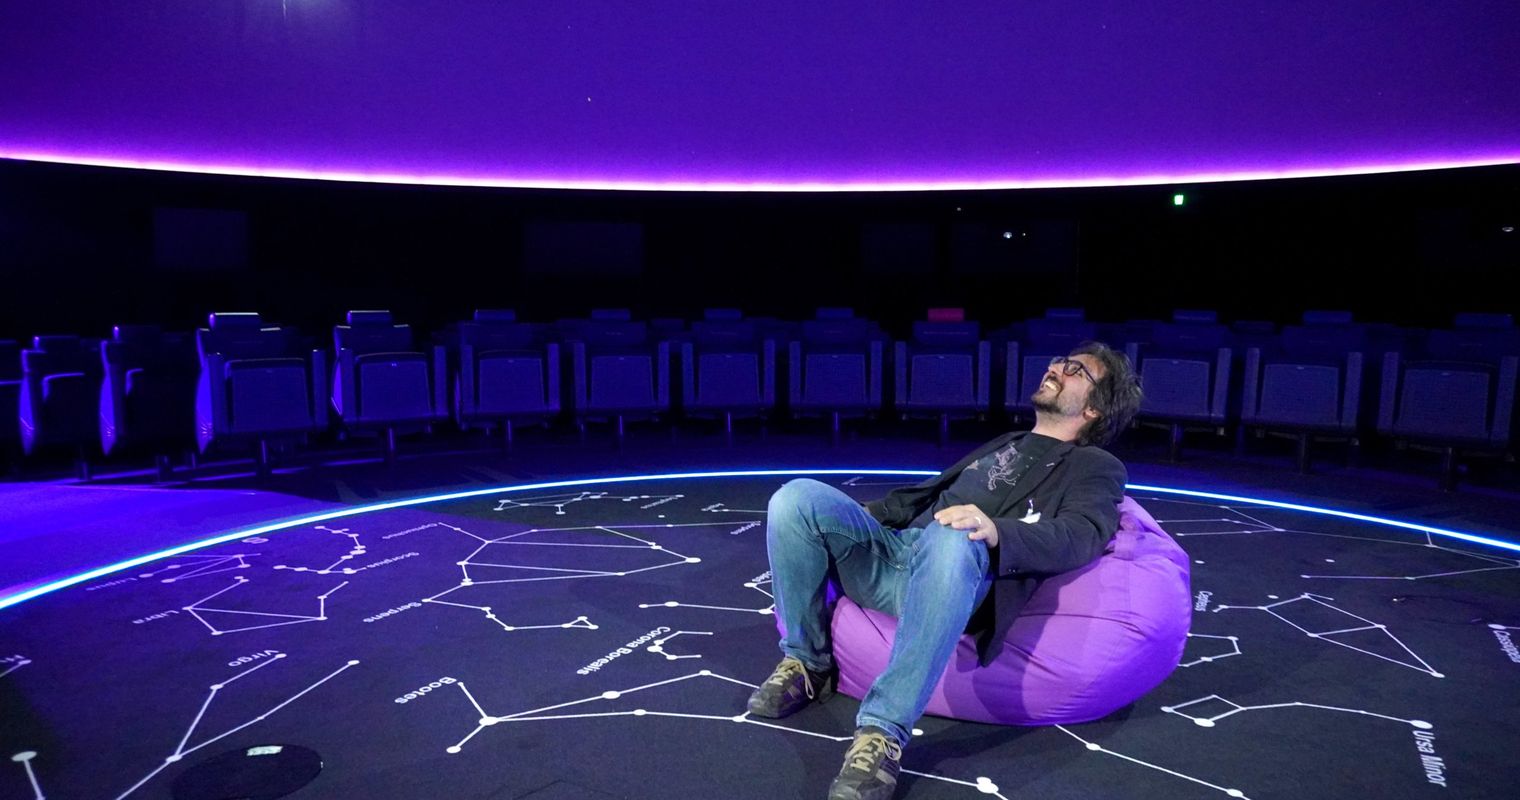 Das Planetarium im Verkehrshaus zeigt neue Welten